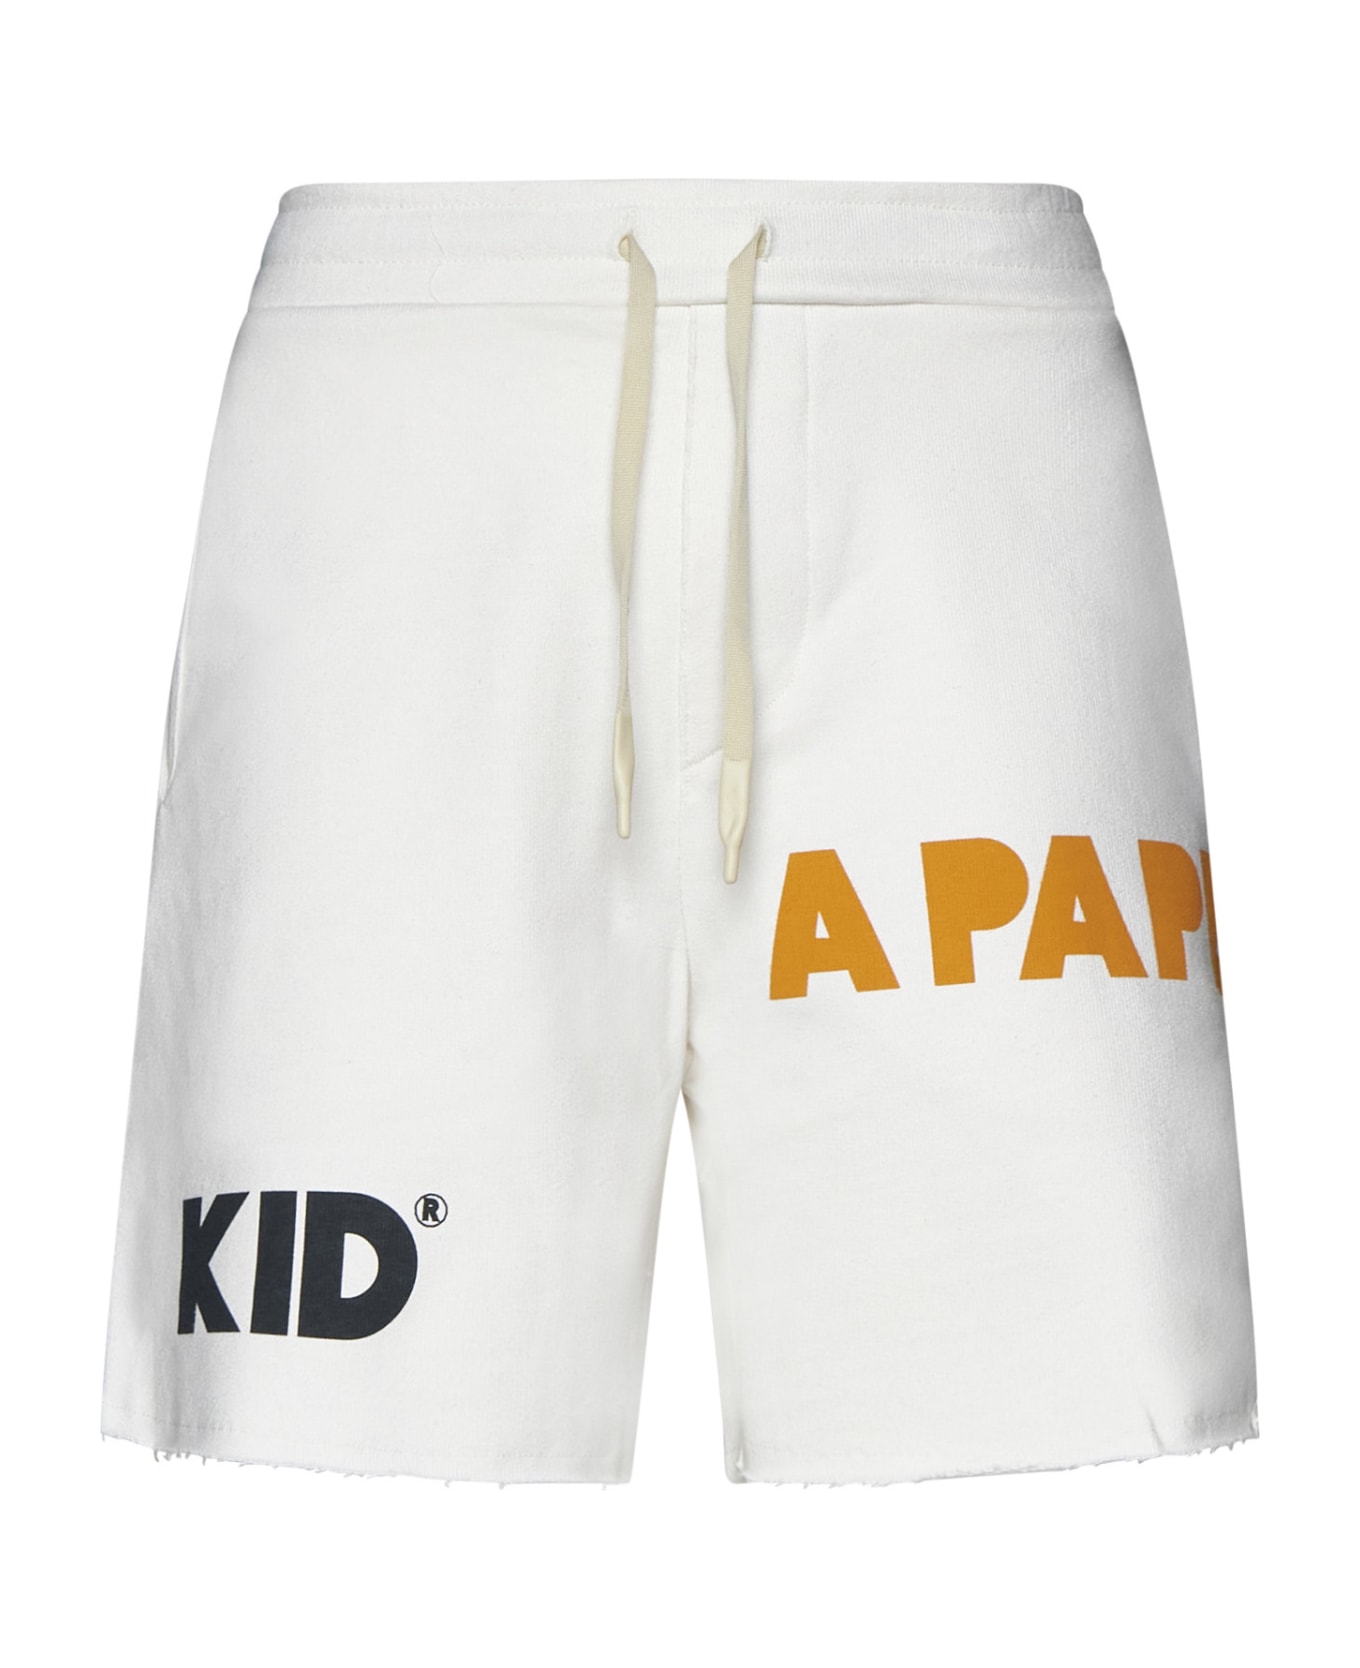 A Paper Kid Shorts - White